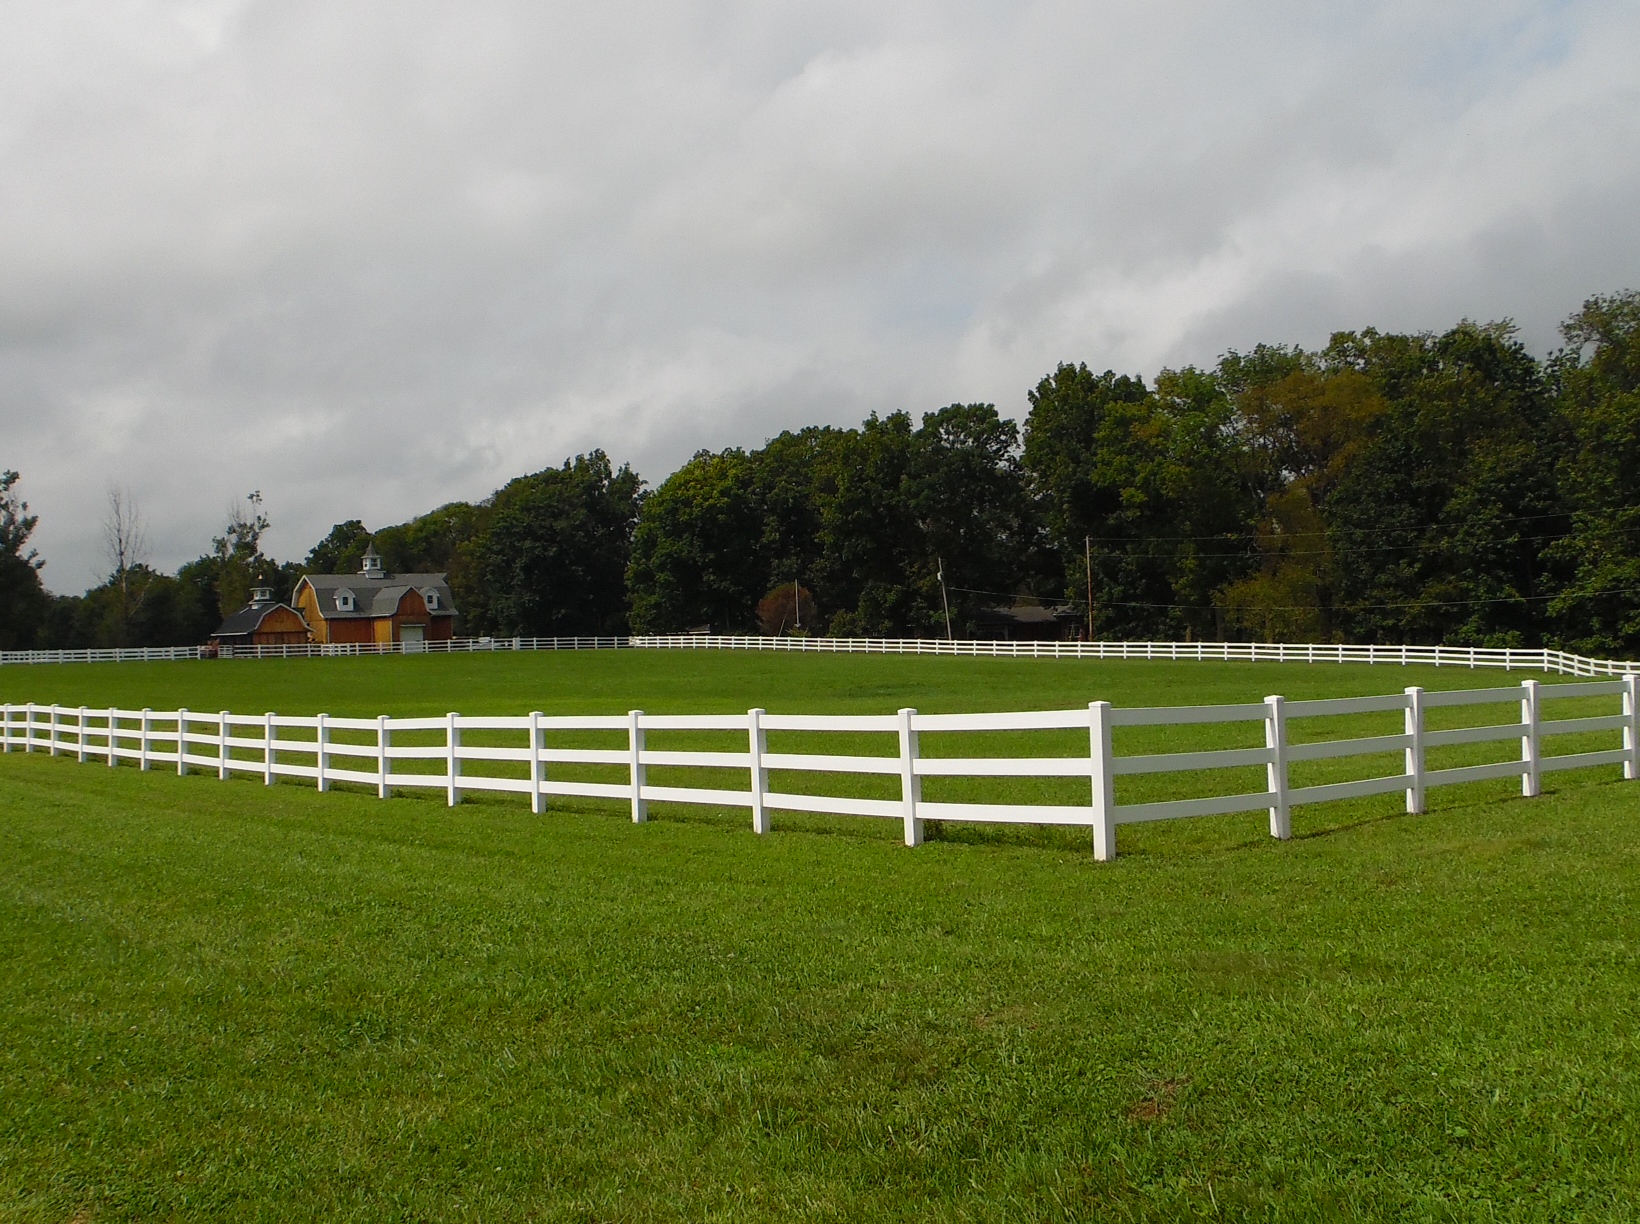 horse-fence Fence